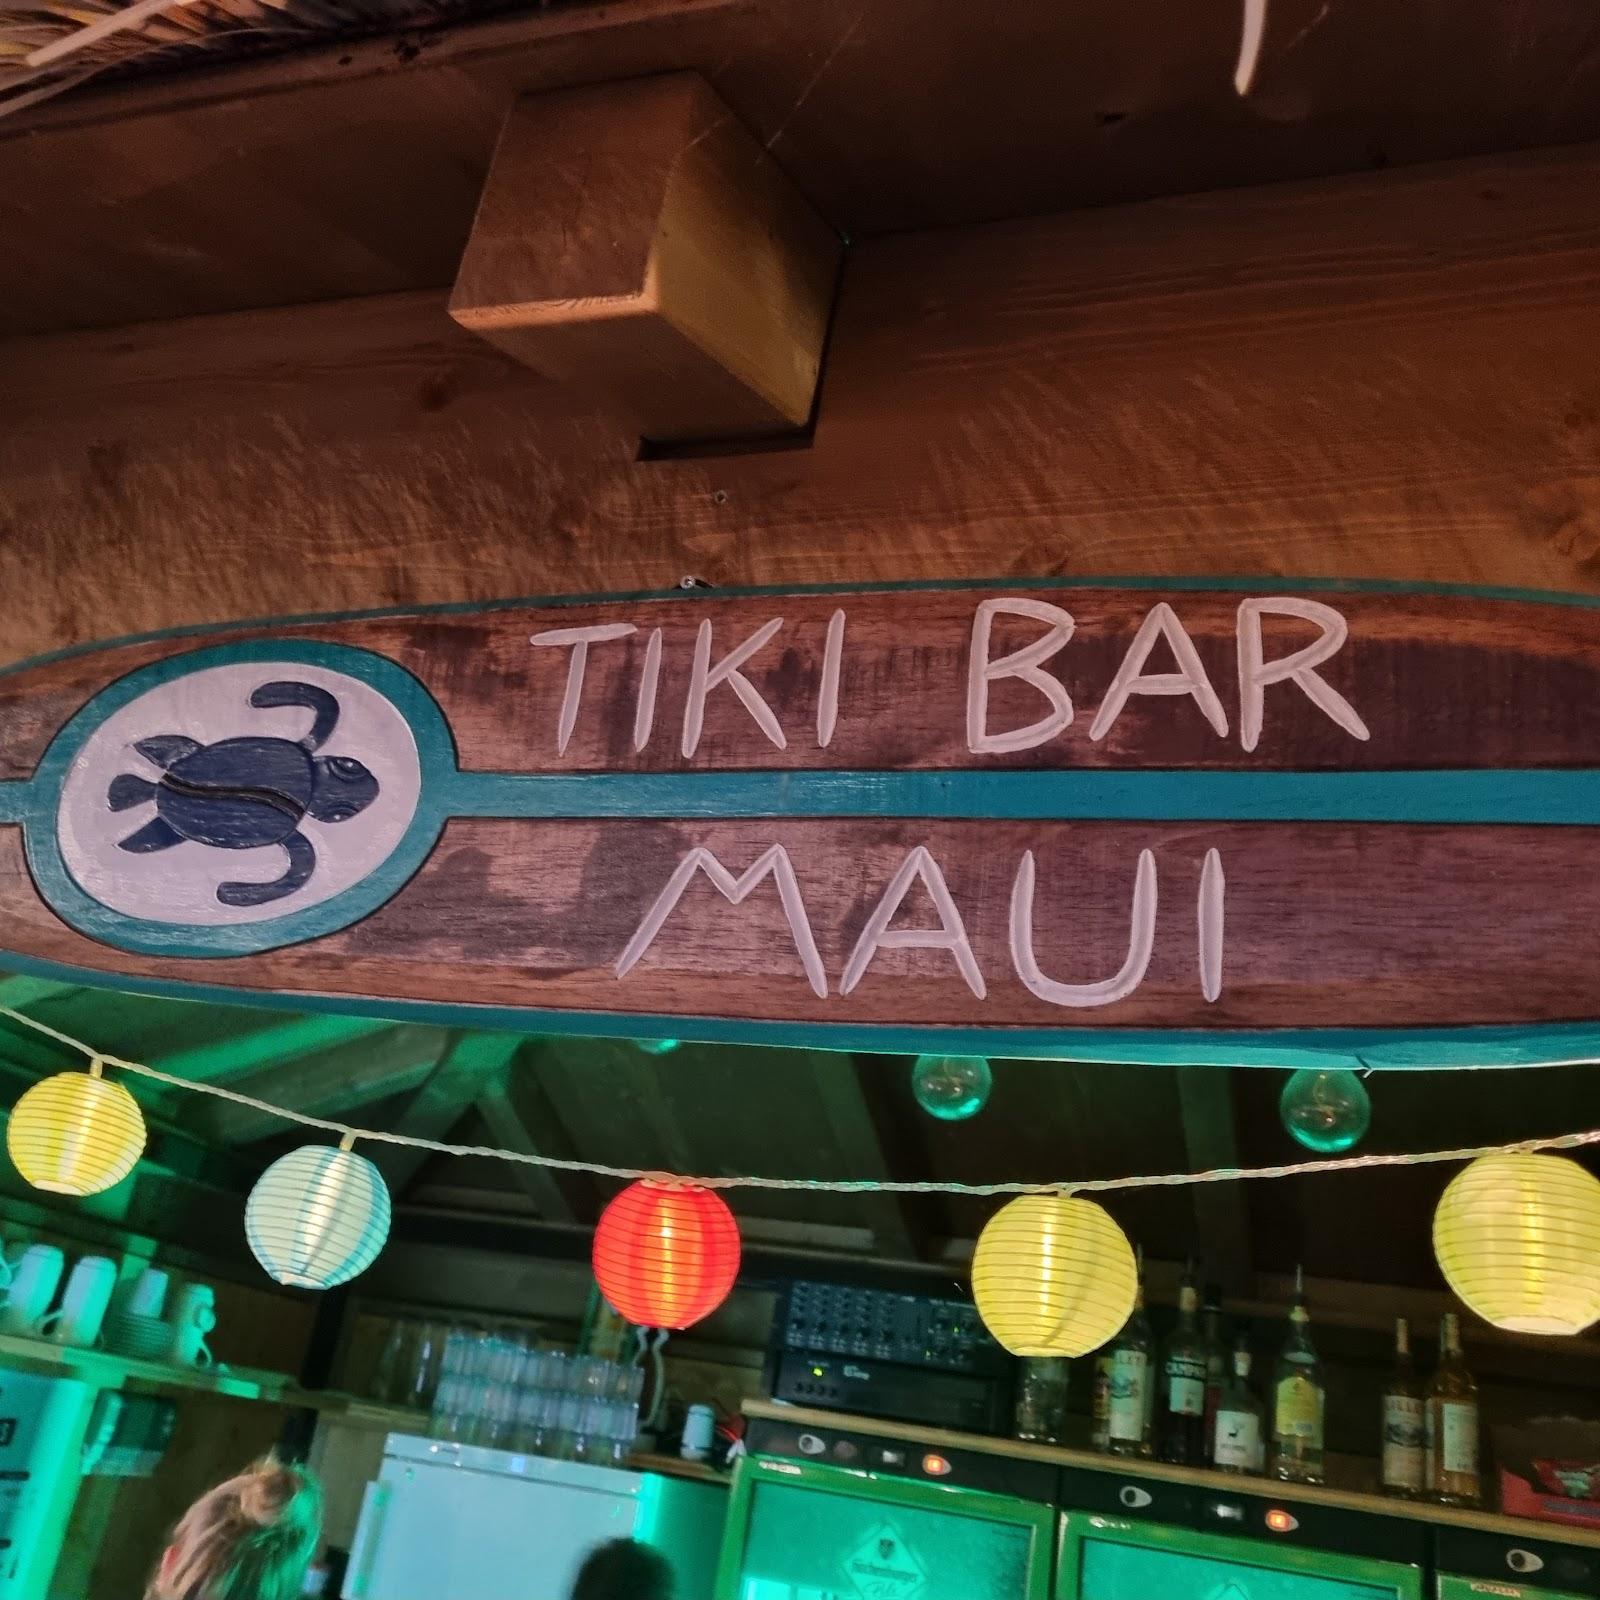 Restaurant "TIKI Bar MAUI" in Mengerskirchen